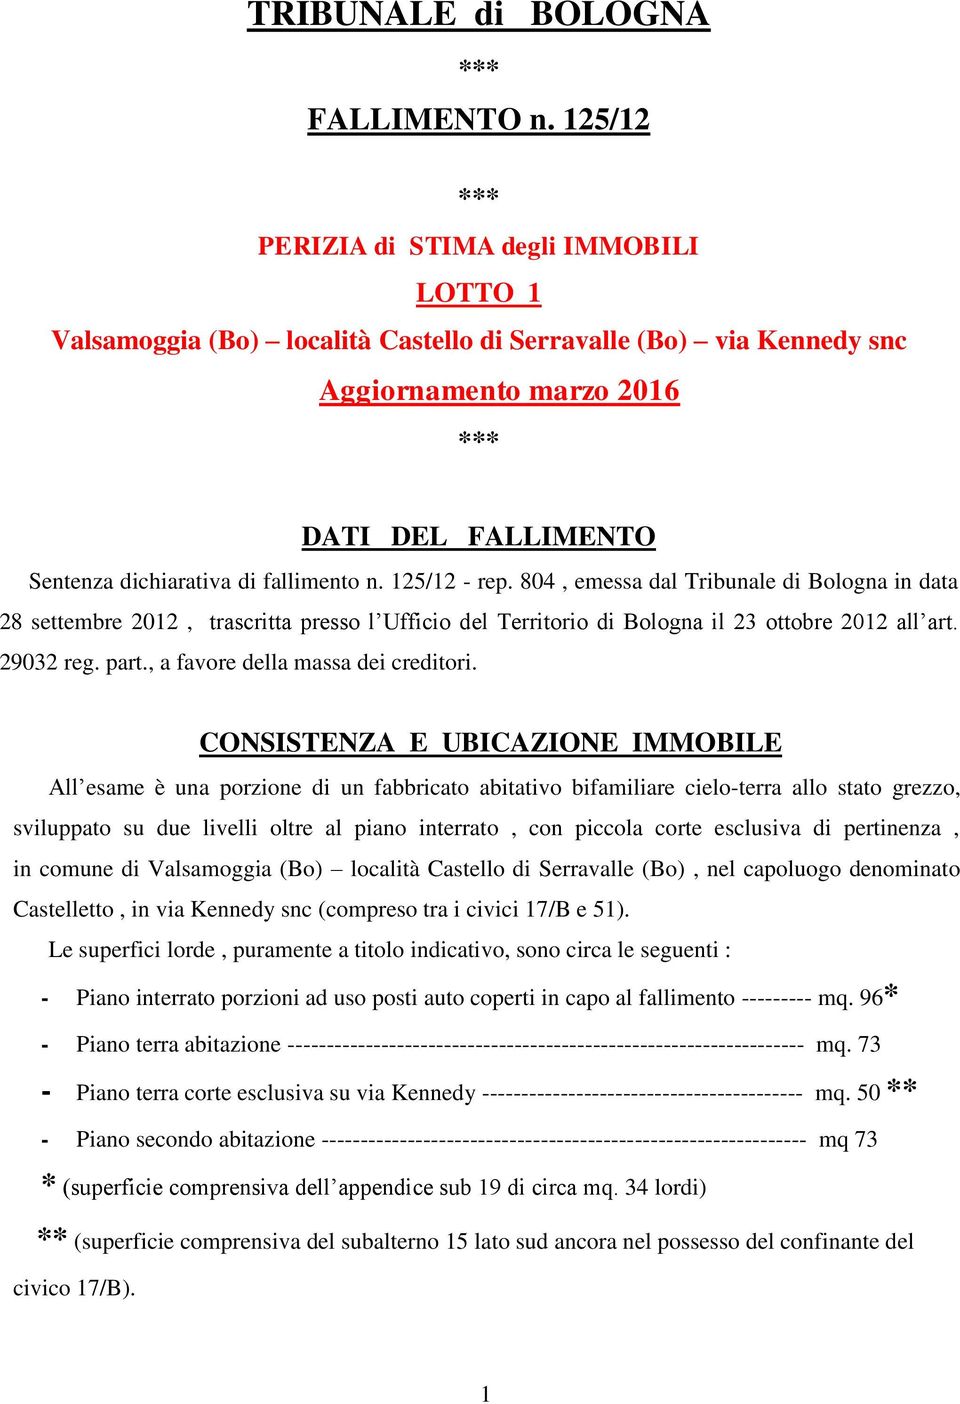 fallimento n. 125/12 - rep. 804, emessa dal Tribunale di Bologna in data 28 settembre 2012, trascritta presso l Ufficio del Territorio di Bologna il 23 ottobre 2012 all art. 29032 reg. part.